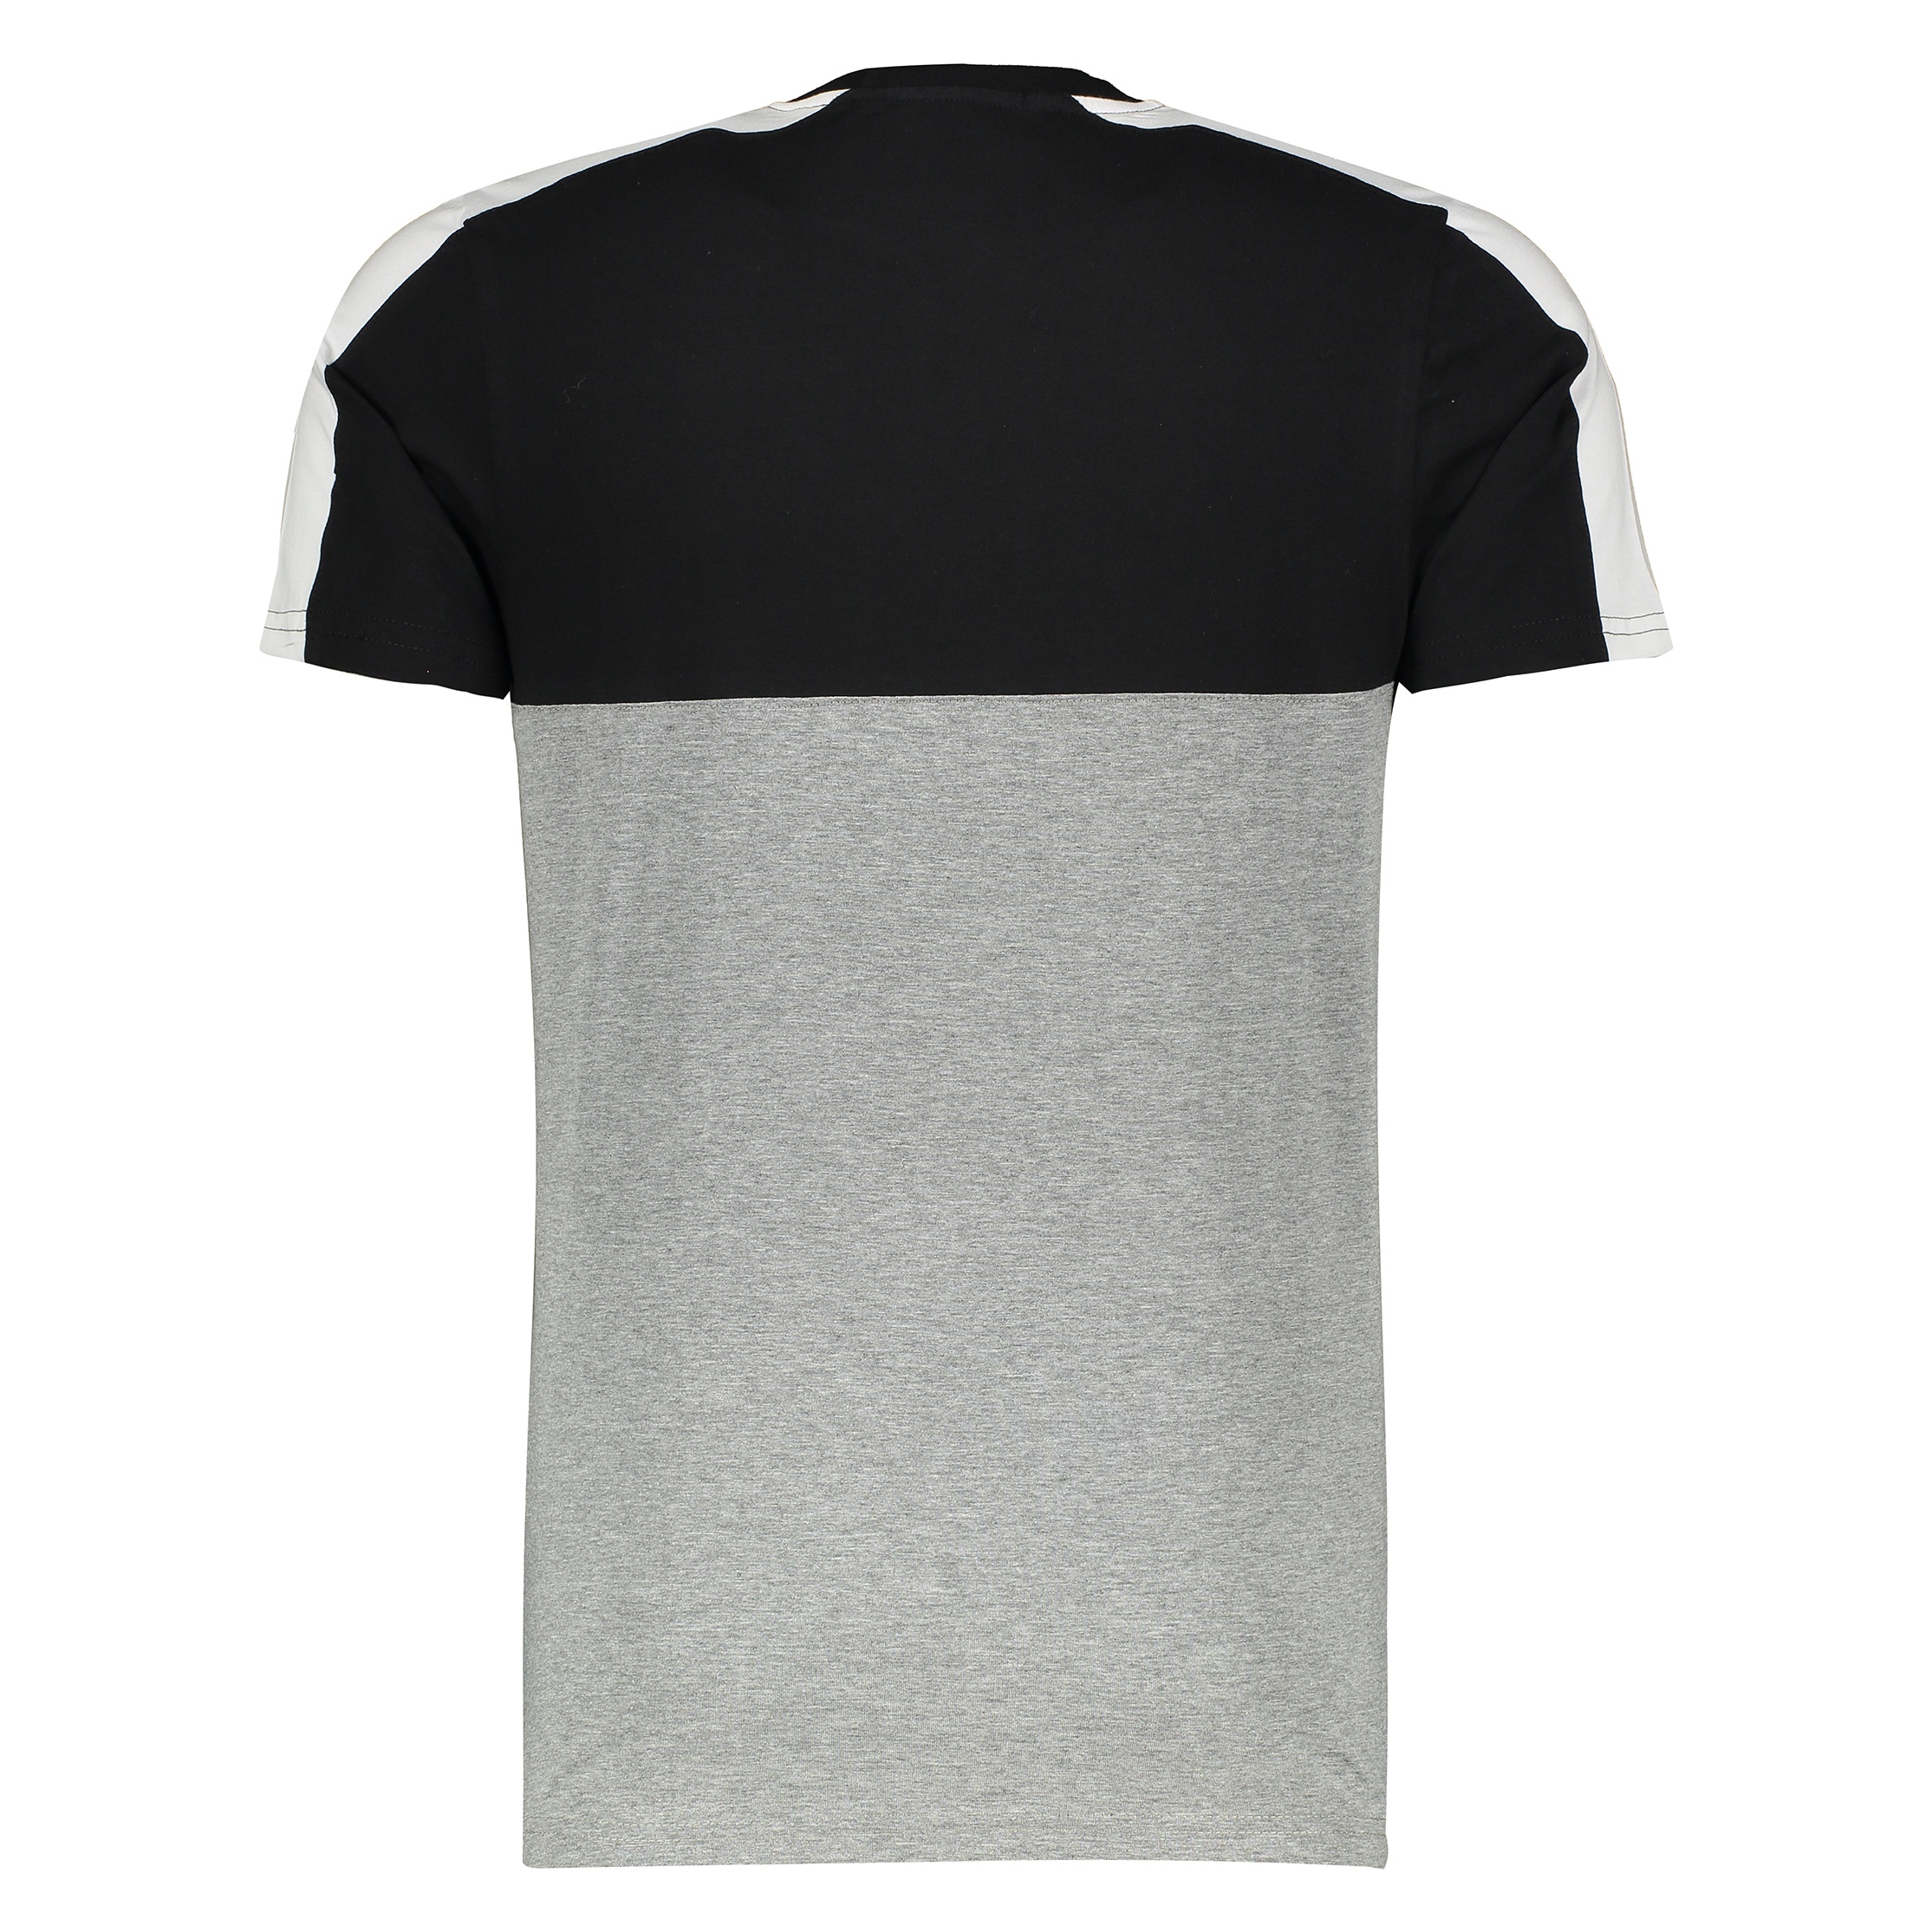 تی شرت مردانه آر ان اس مدل 1131109-99 - مشکی - 3